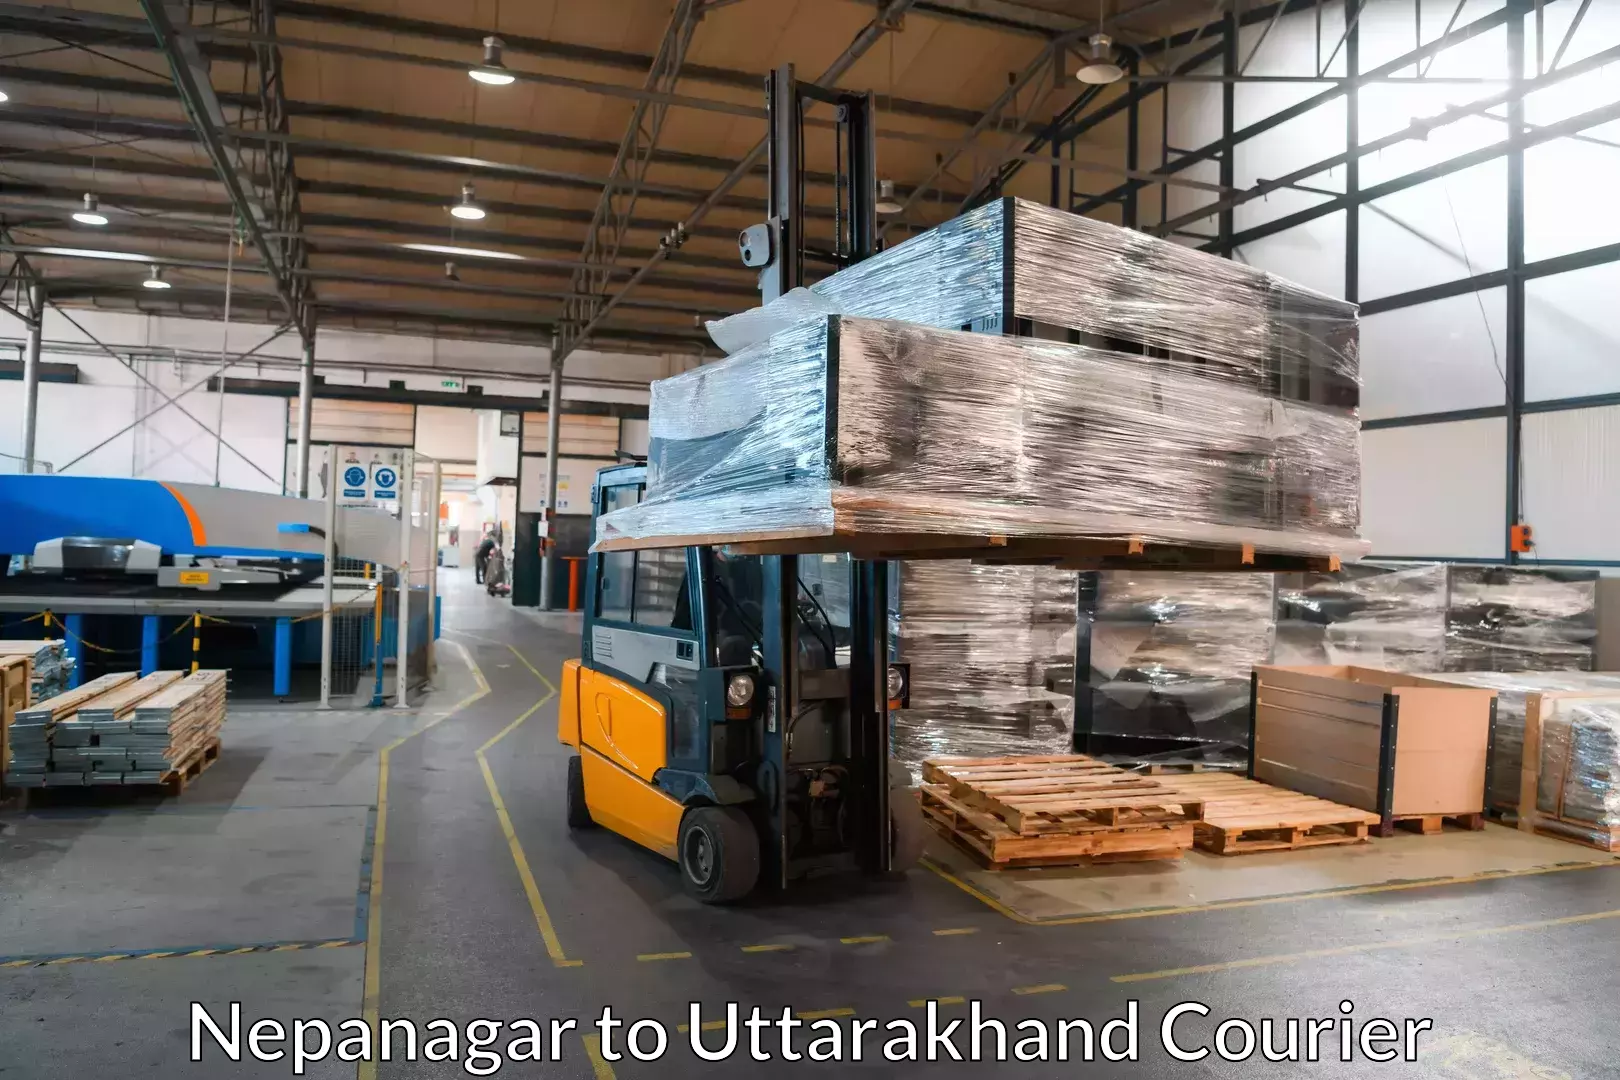 Household goods transport service Nepanagar to Uttarakhand